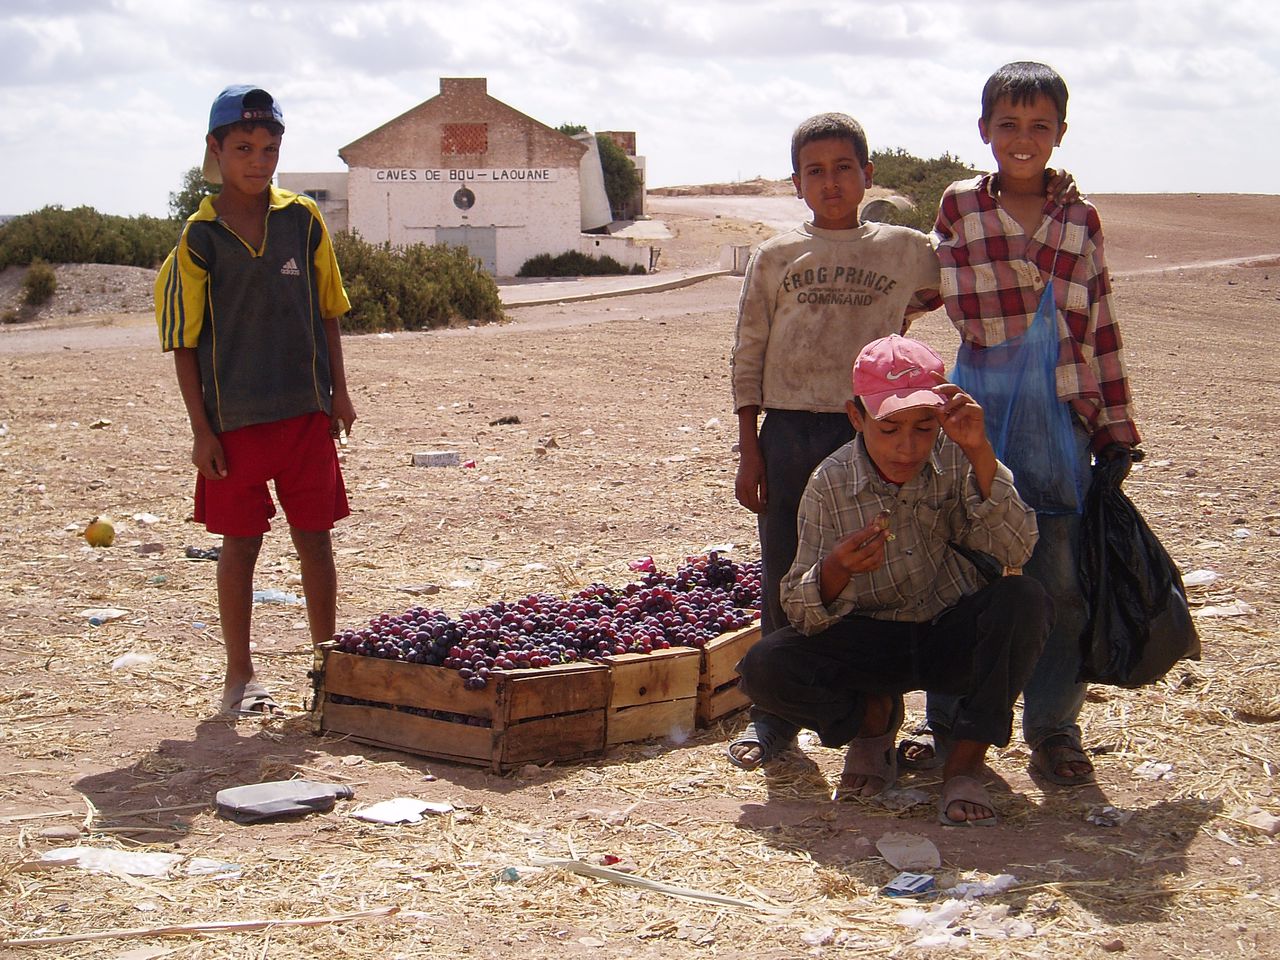 ZONNIGE WIJNSTREKEN: Mede met hulp van Franse adviseurs produceert islamitisch Marokko goede wijn. Hierboven: druivenverkoop in Boulaouane, waar de gelijknamige wijn vandaag komt. Foto Gerbert van der Aa